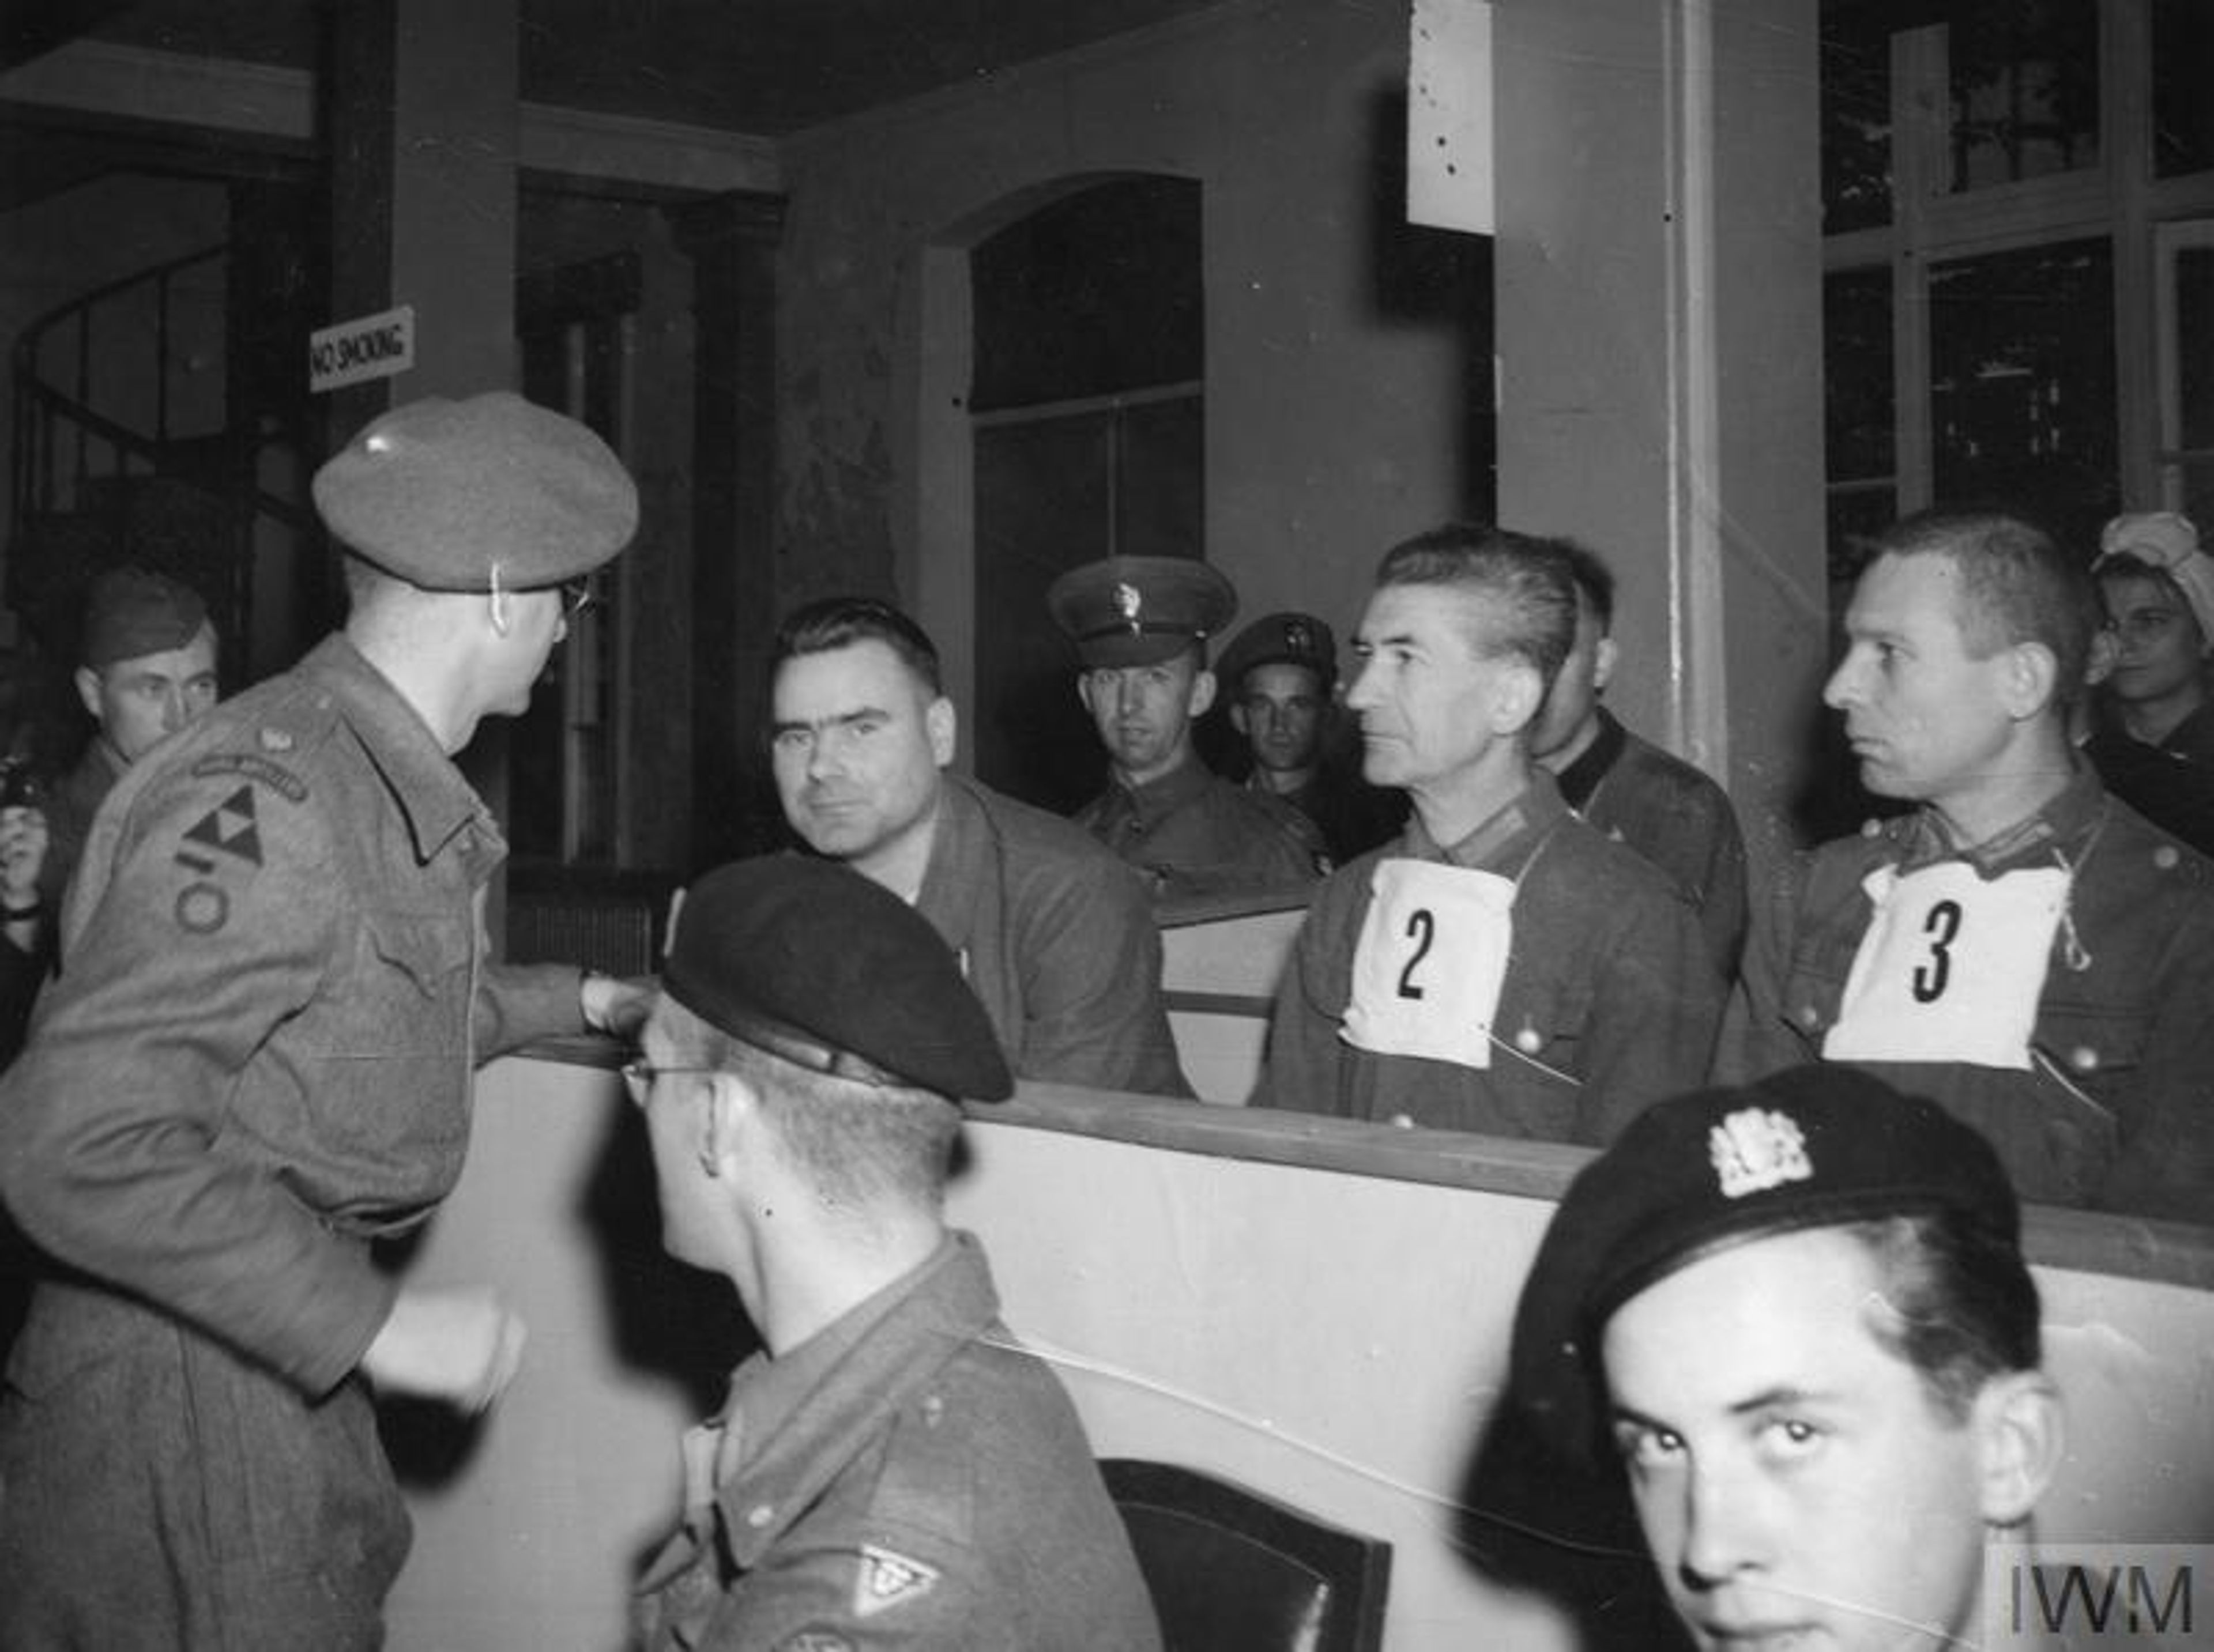 De voormalige commandant van Bergen-Belsen, Josef Kramer, zittend naast Dr. Fritz Klein, tijdens zijn proces in Lüneburg; 19 augustus 1945.